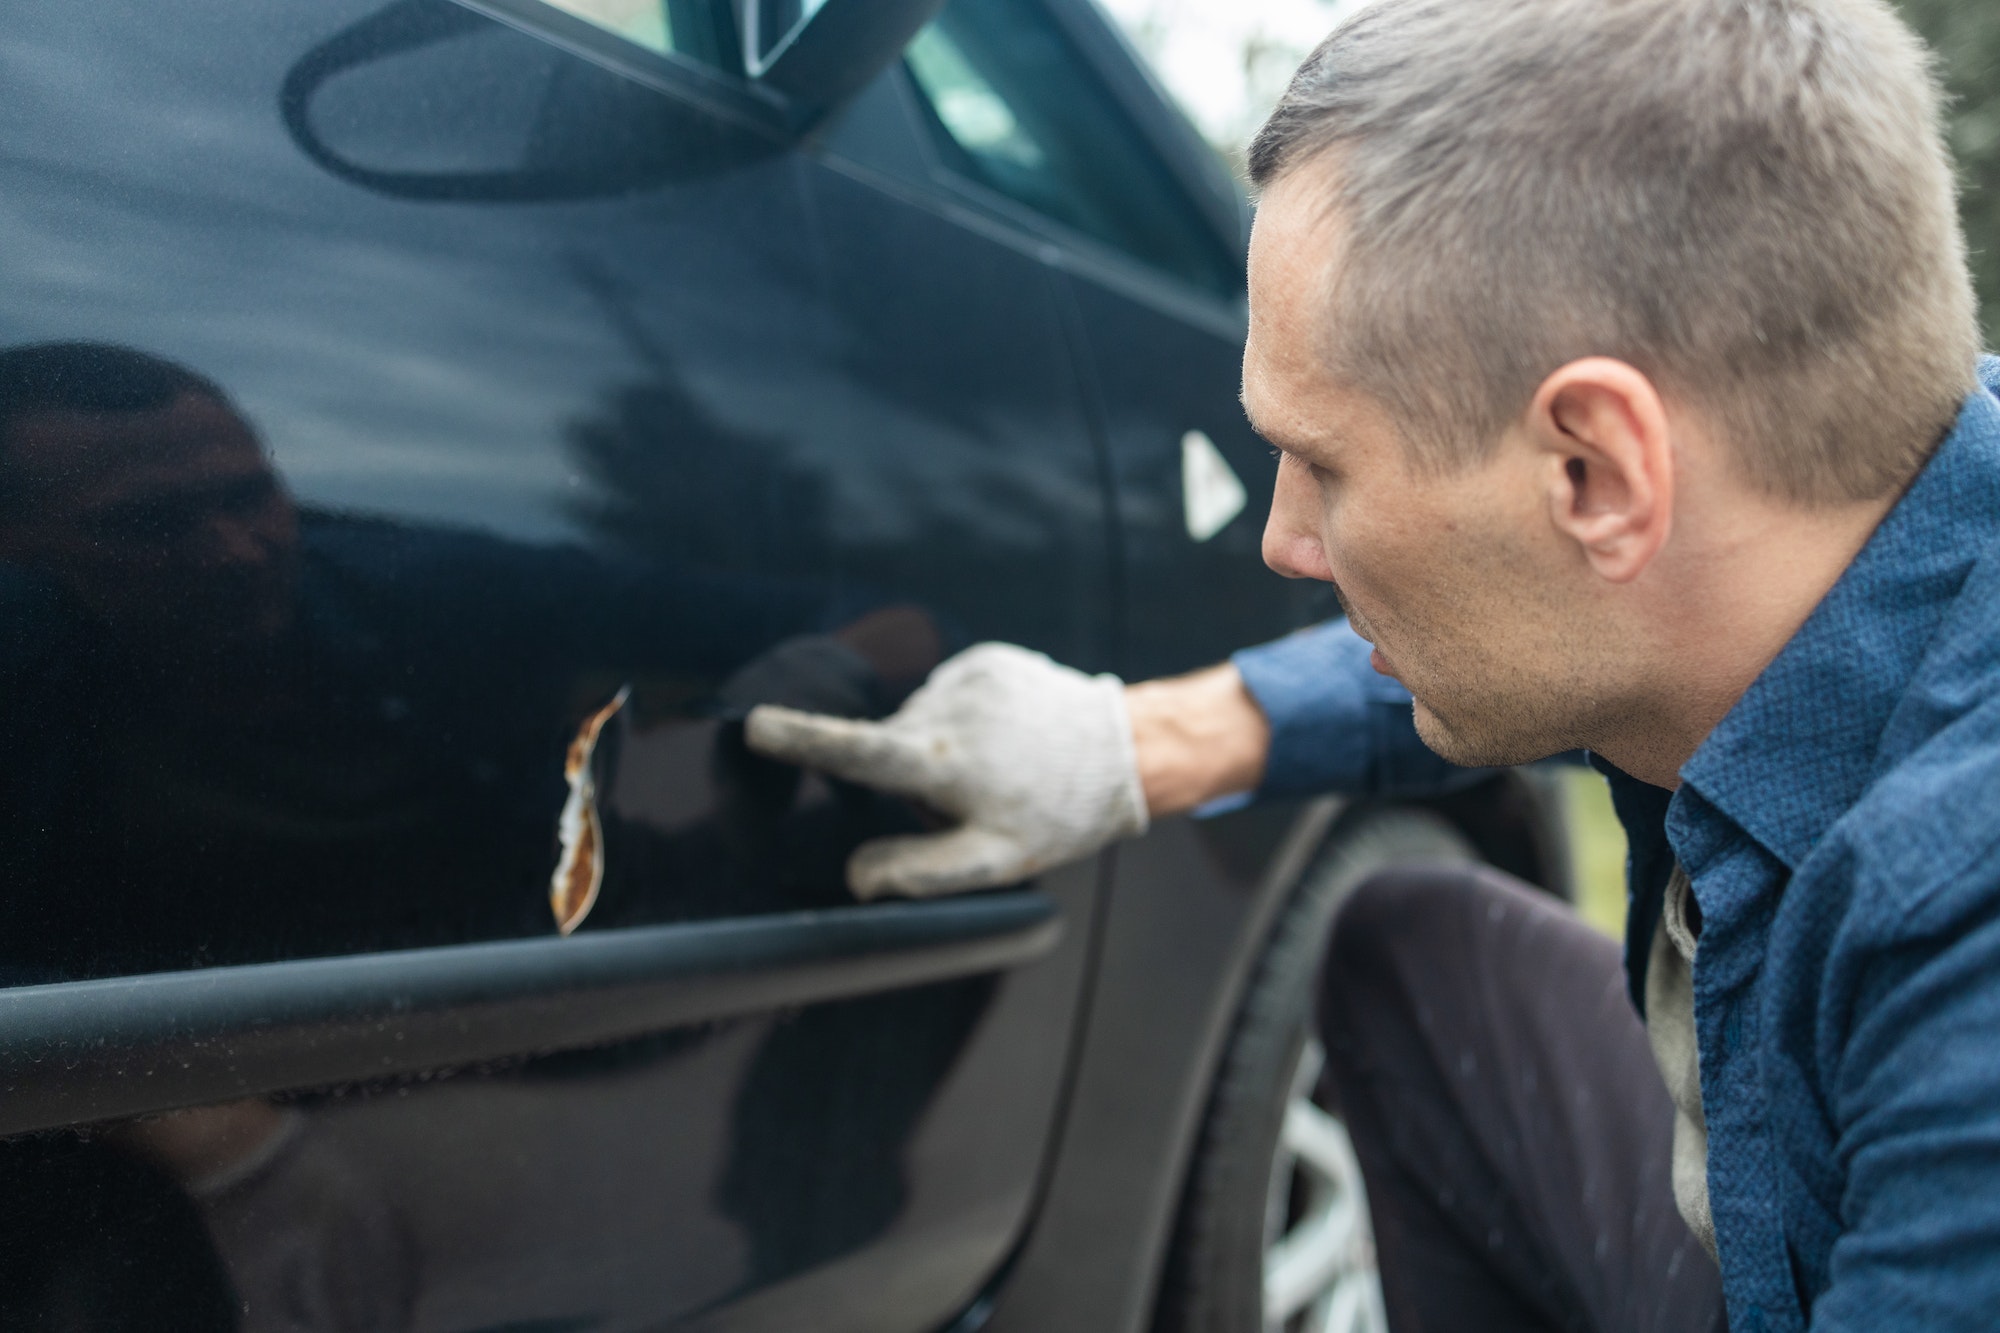 Pros y contras de utilizar pintura metálica en coches